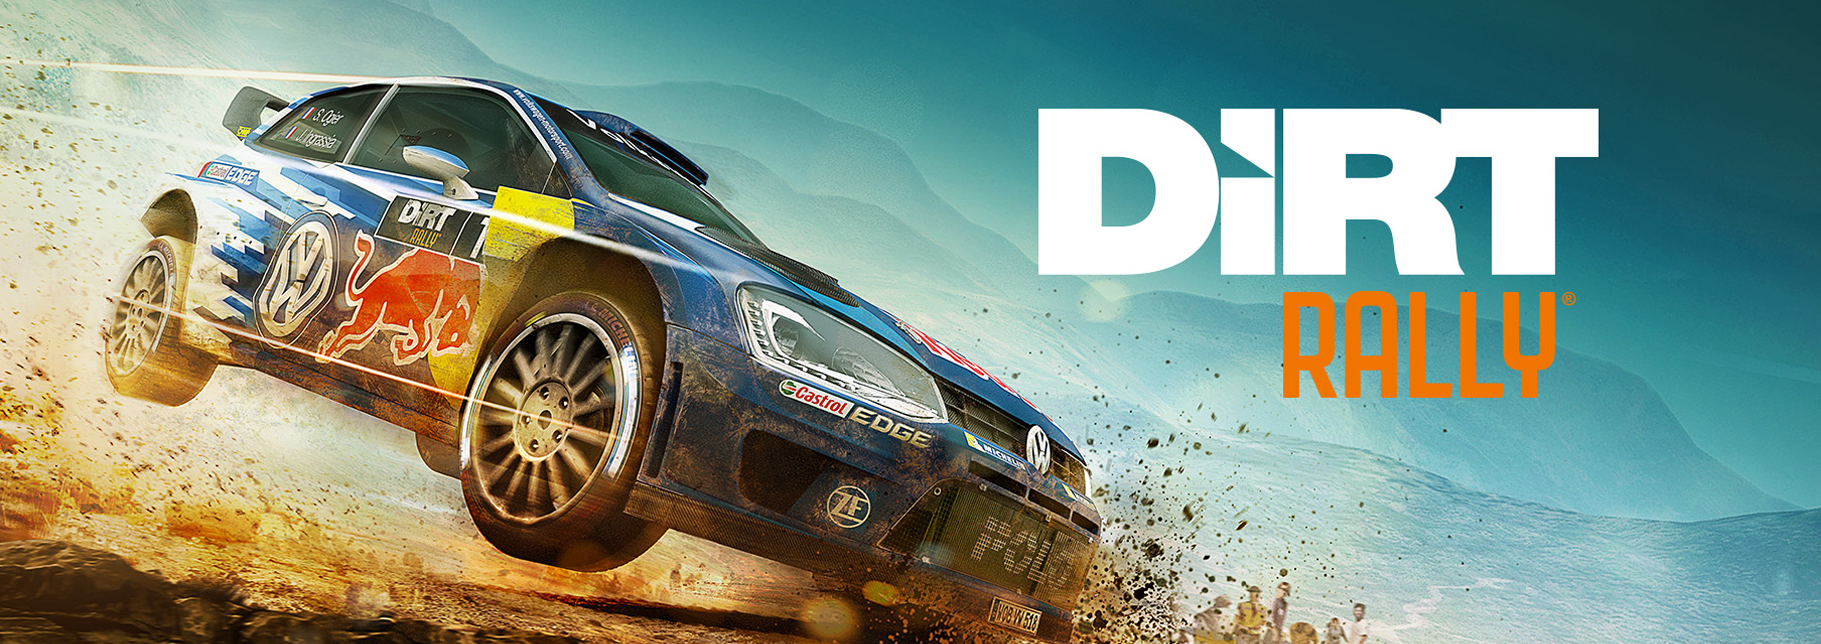 Vr rally. Dirt Rally VR. Плейстейшен ралли. CARX Rally VR. Dirt Rally VR Gameplay.